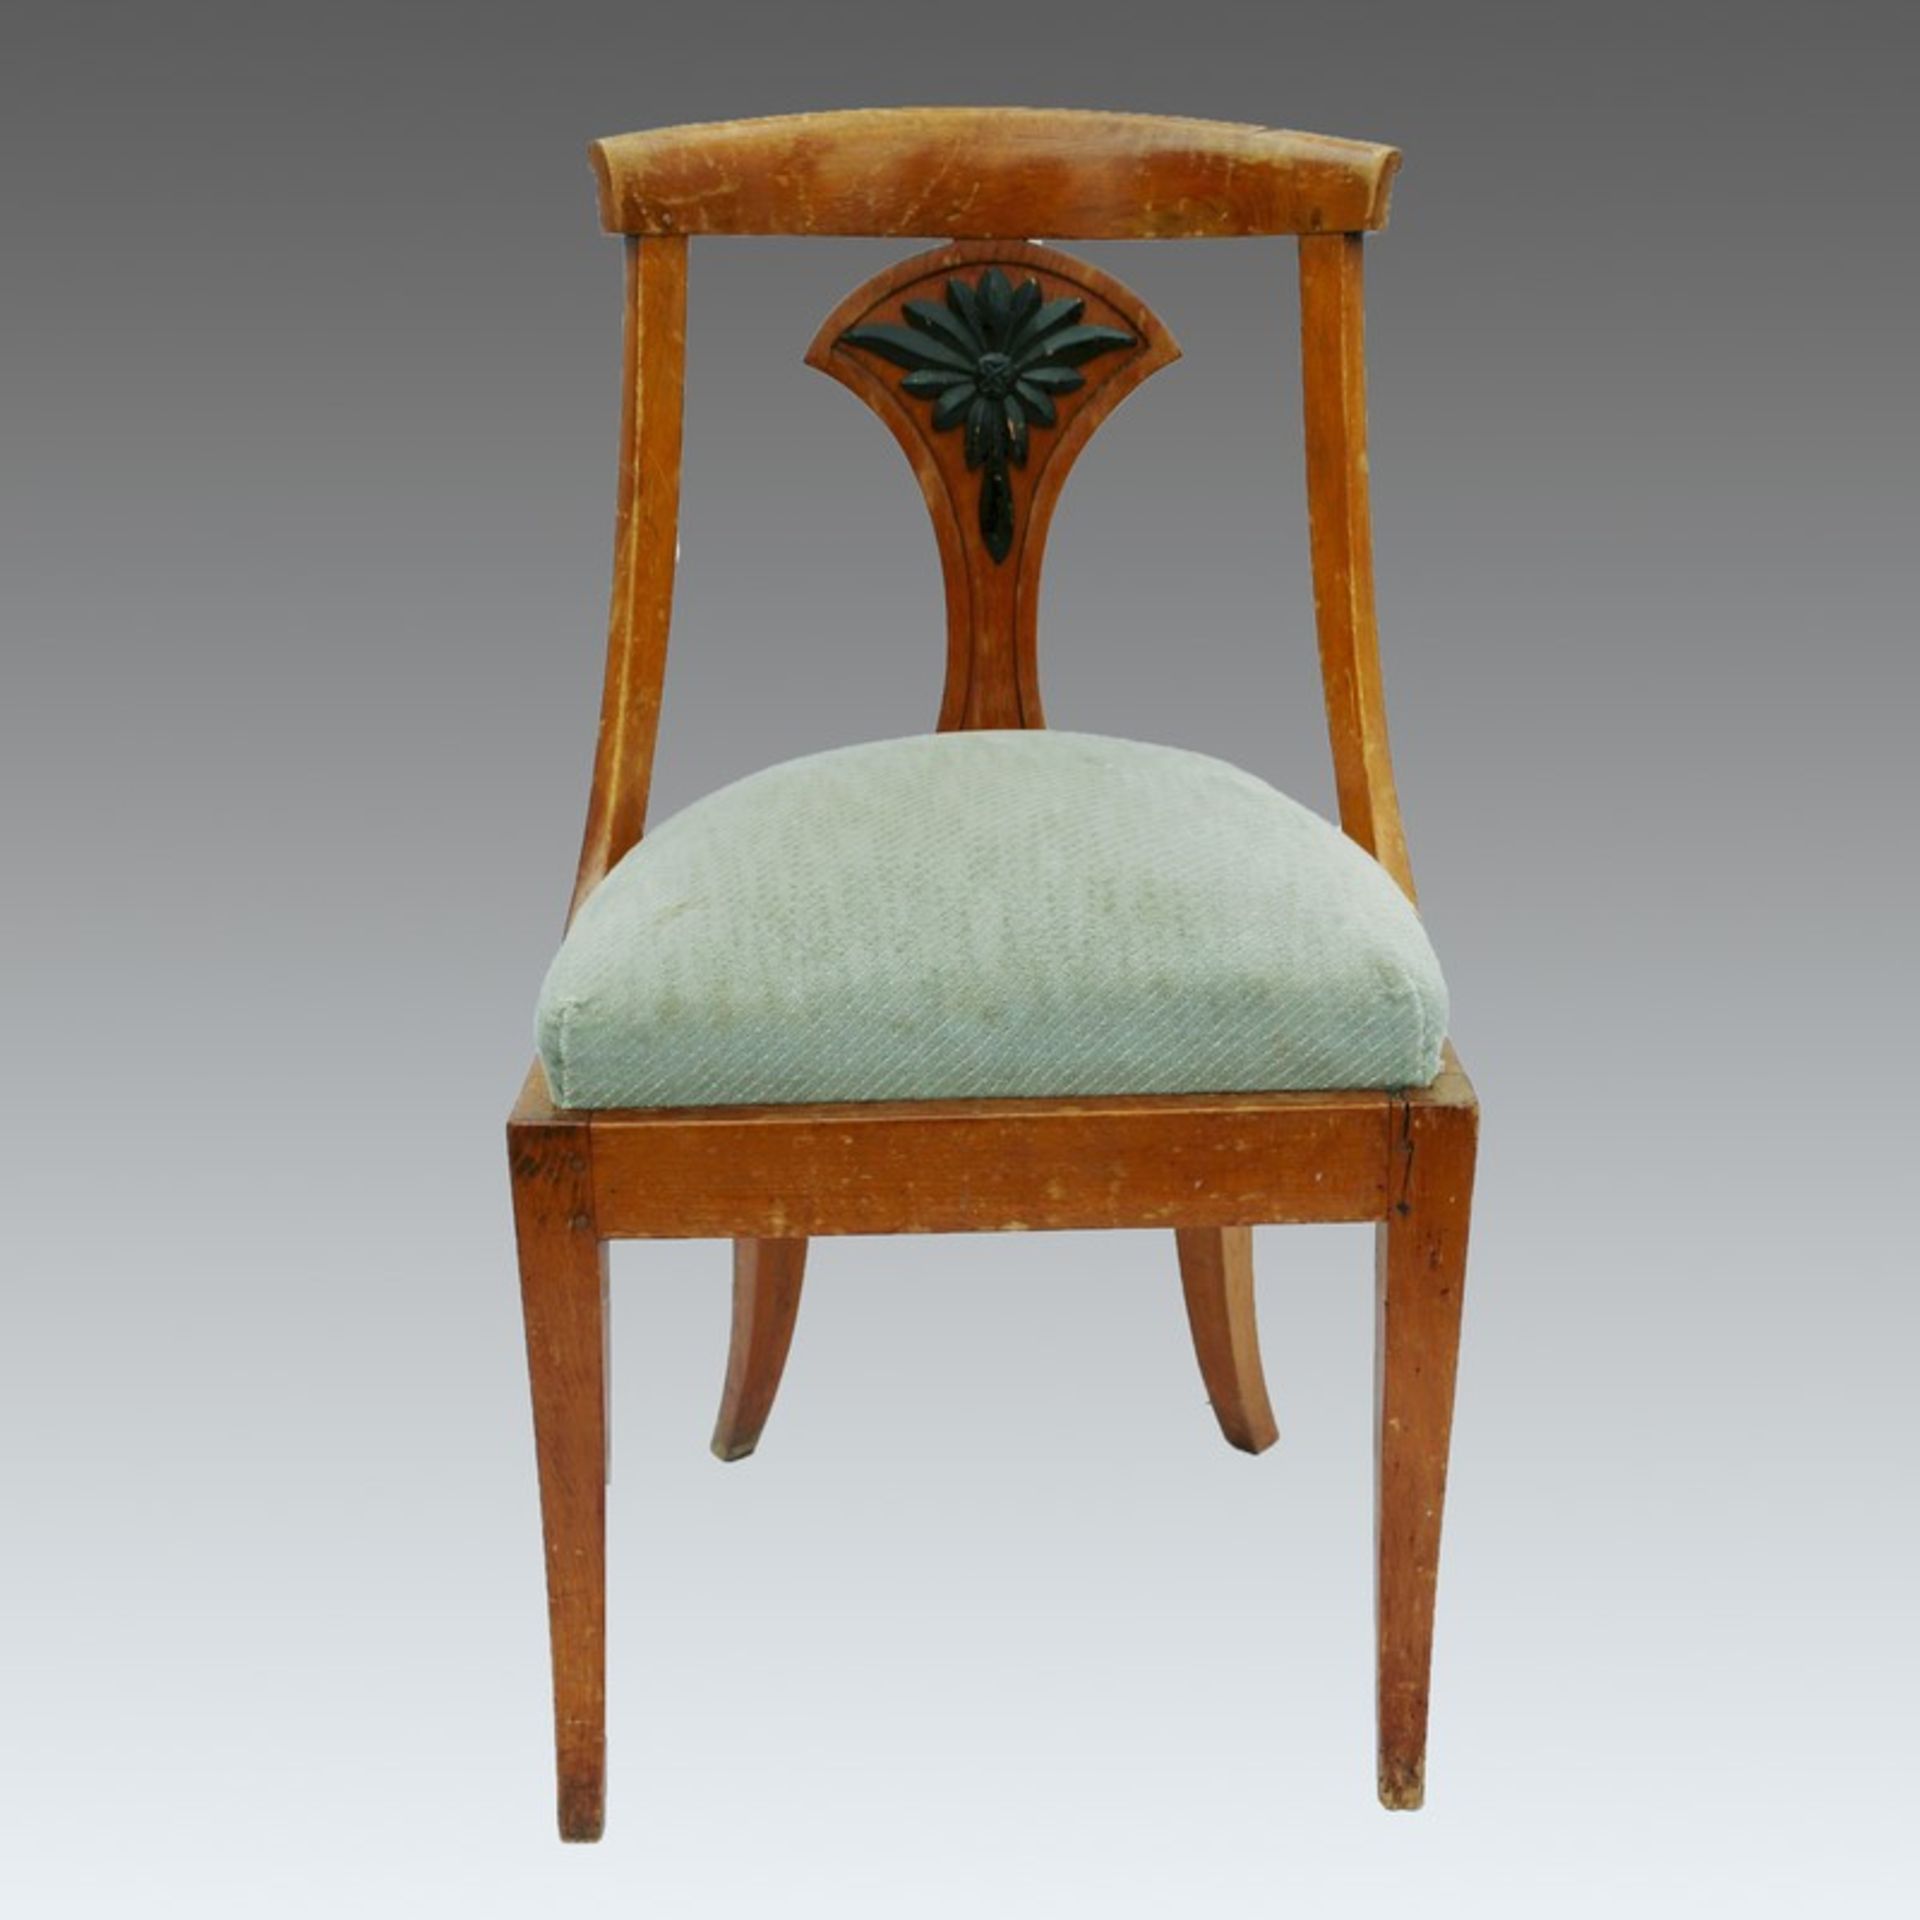 Biedermeier - Stuhl um 1820, süddeutsch, Kirschbaum, gebogte Vierkantbeine, halbkreisförmige - Bild 2 aus 4